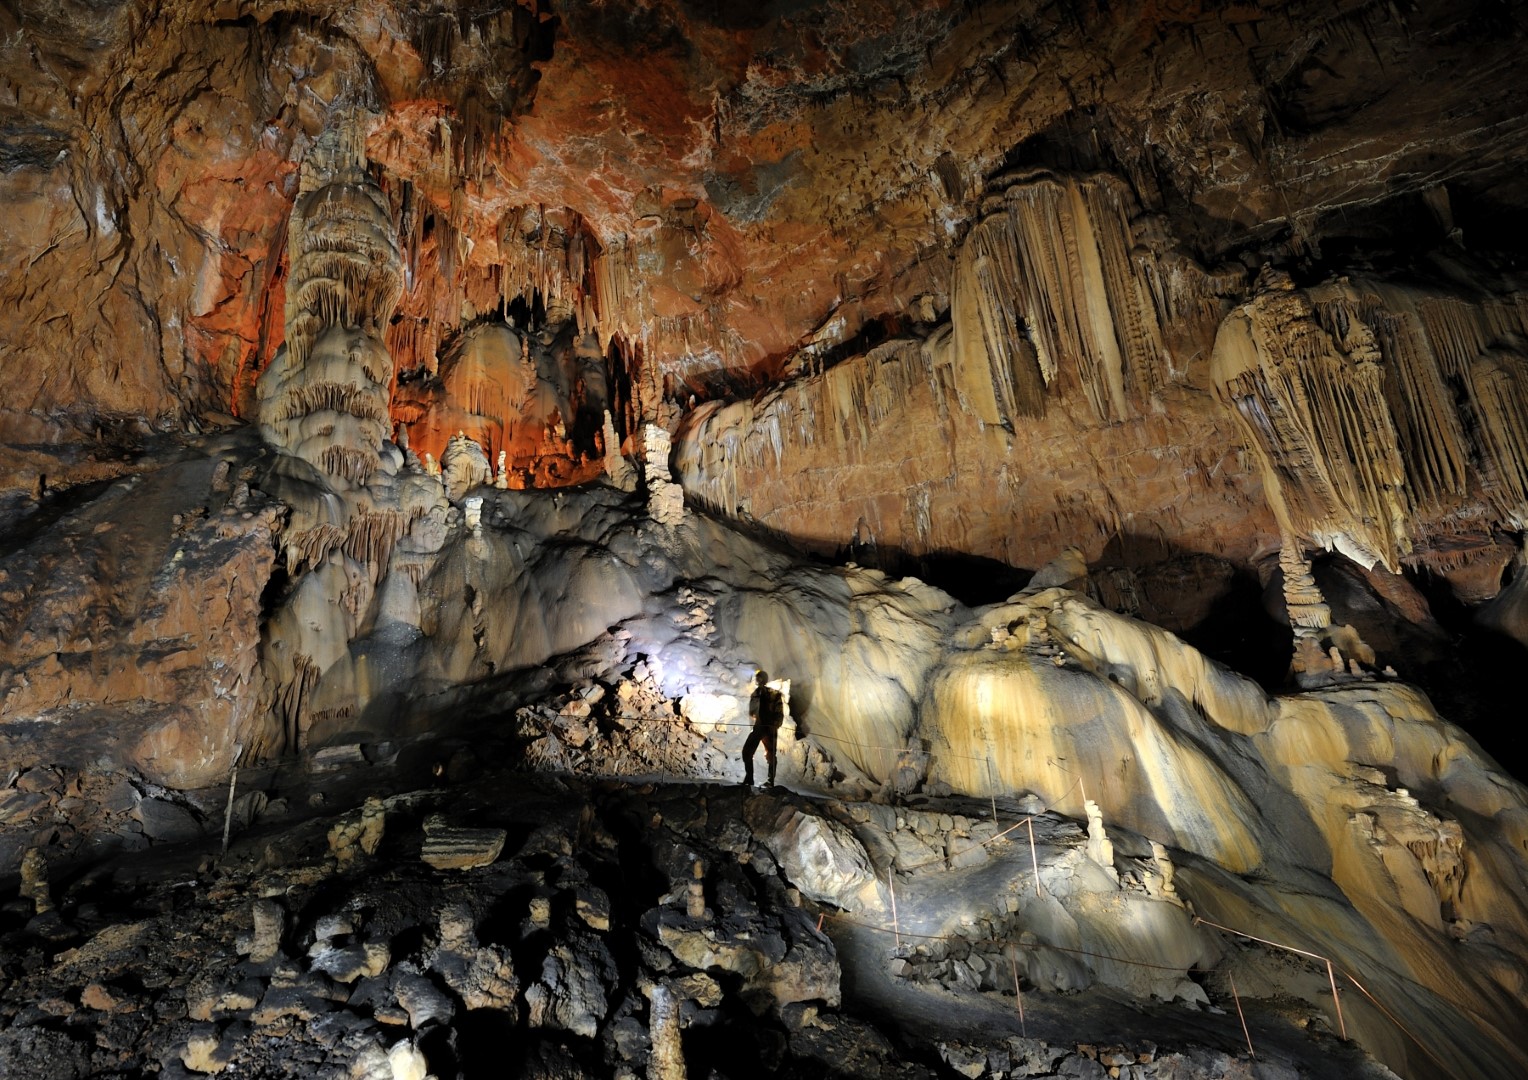 The Divaška cave